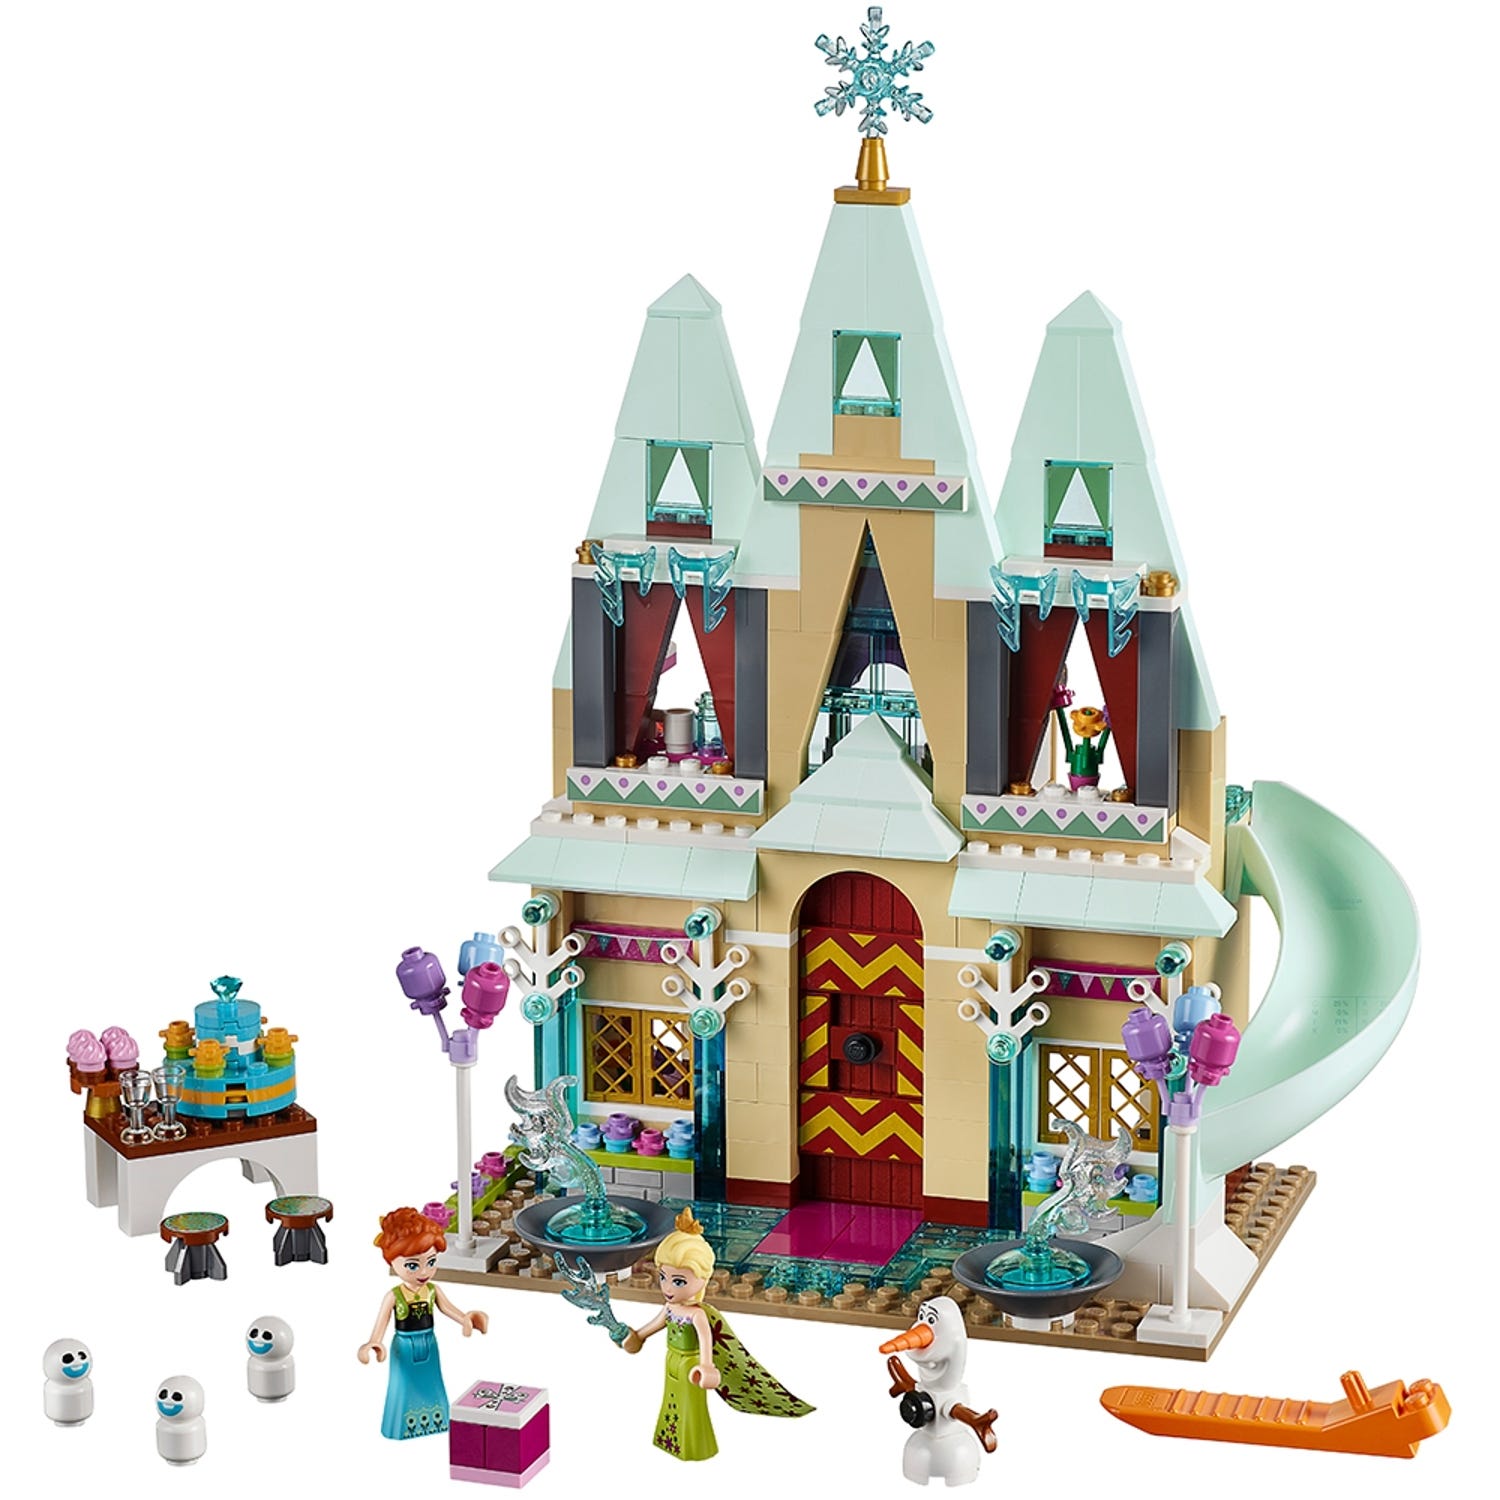 Arendelle Castle Celebration | Disney™ online at the LEGO® Shop US